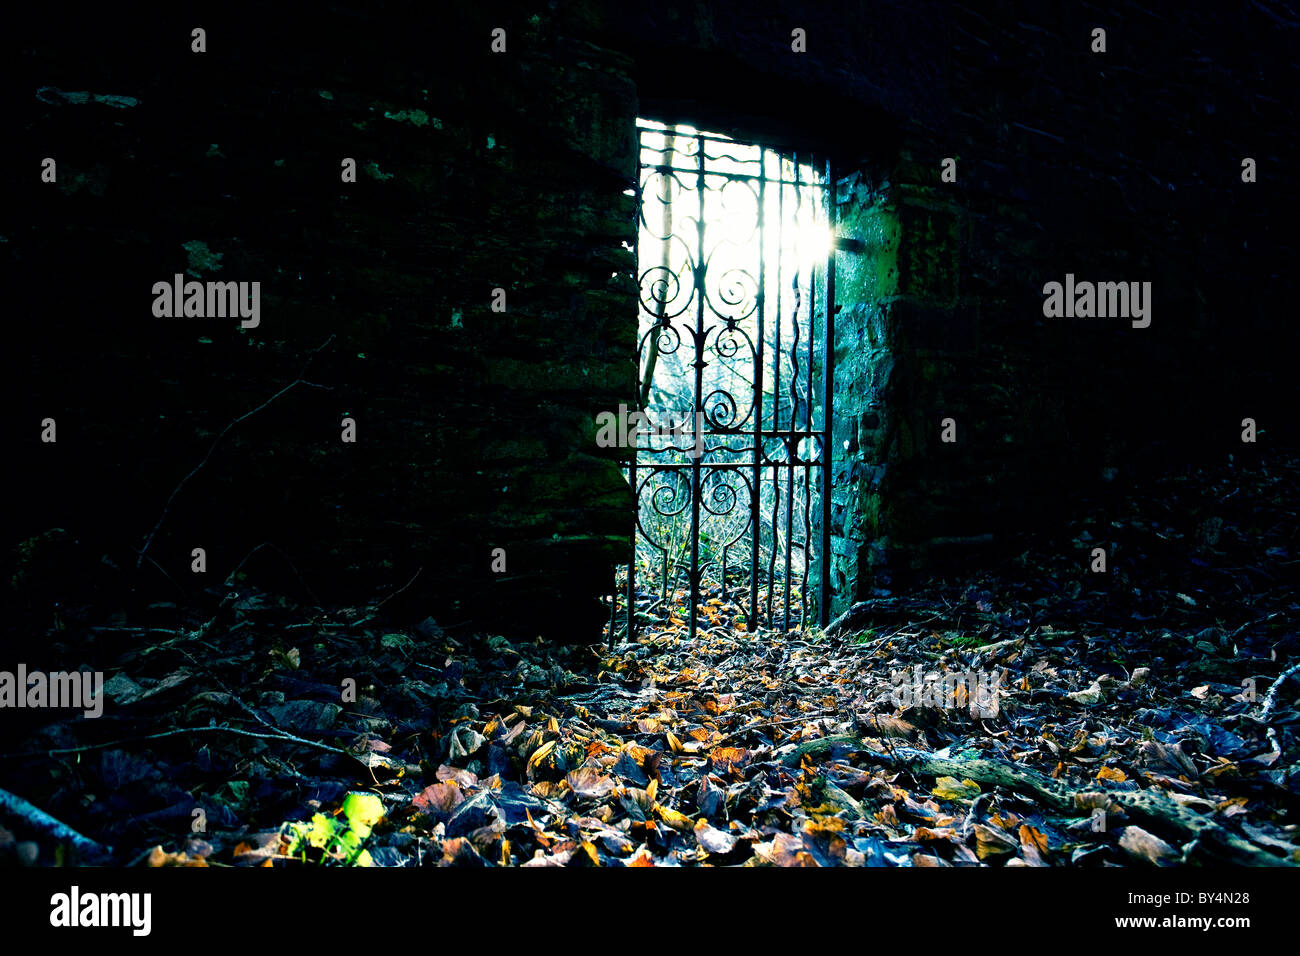 Puerta de entrada a un jardín secreto, Dumfries y Galloway, Escocia Foto de stock